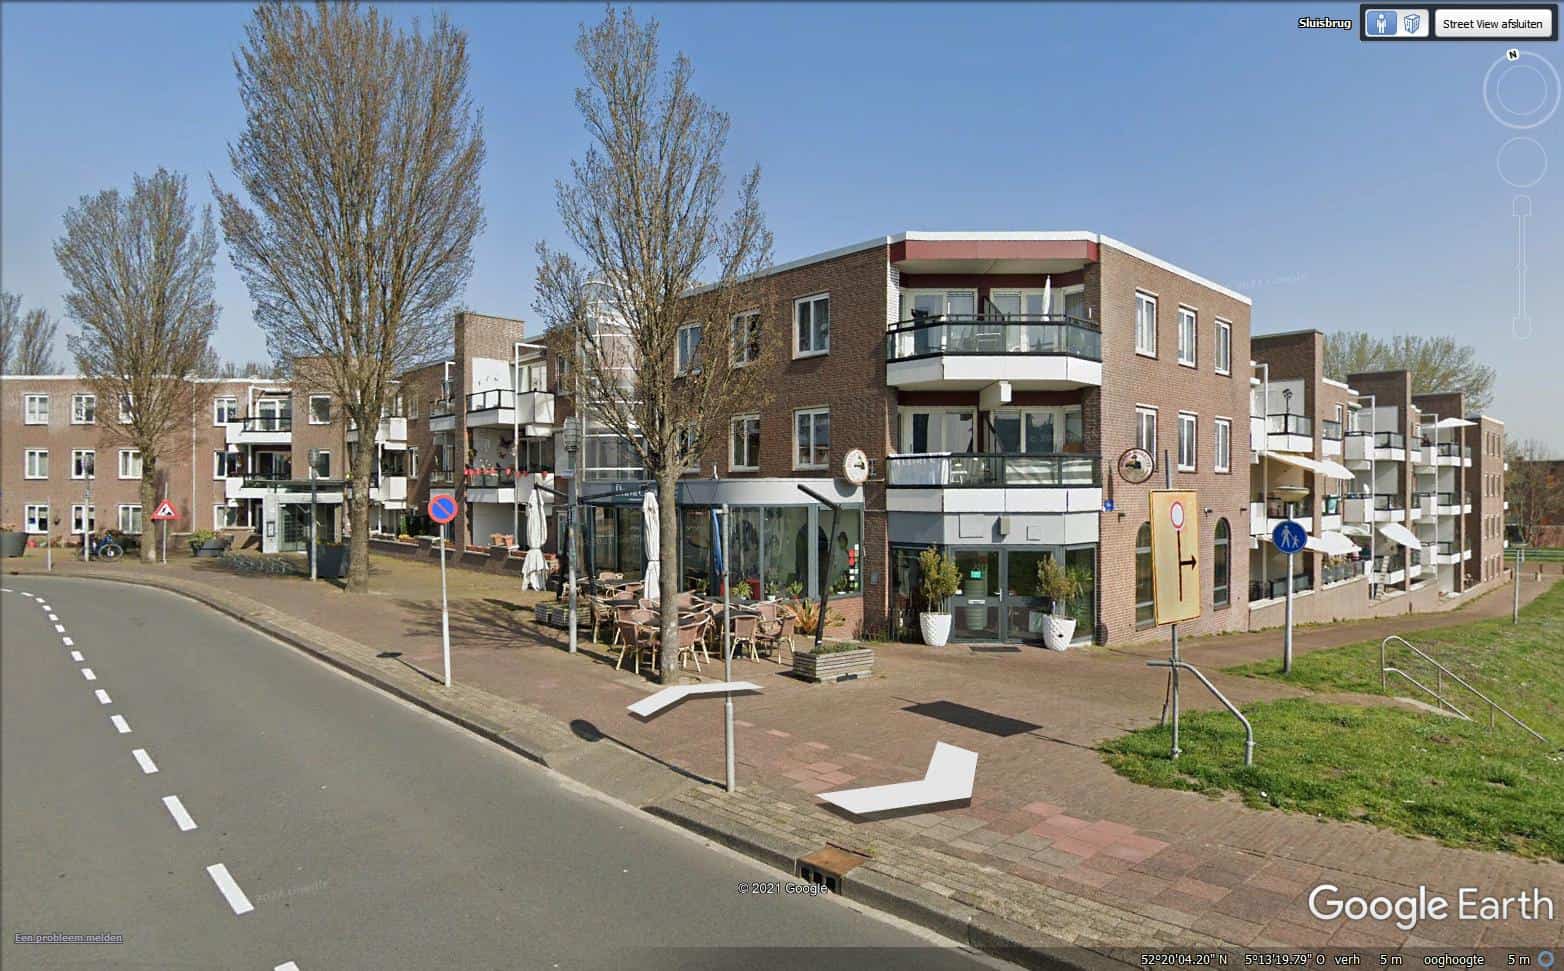 Almere: Brava Casa Ristorante